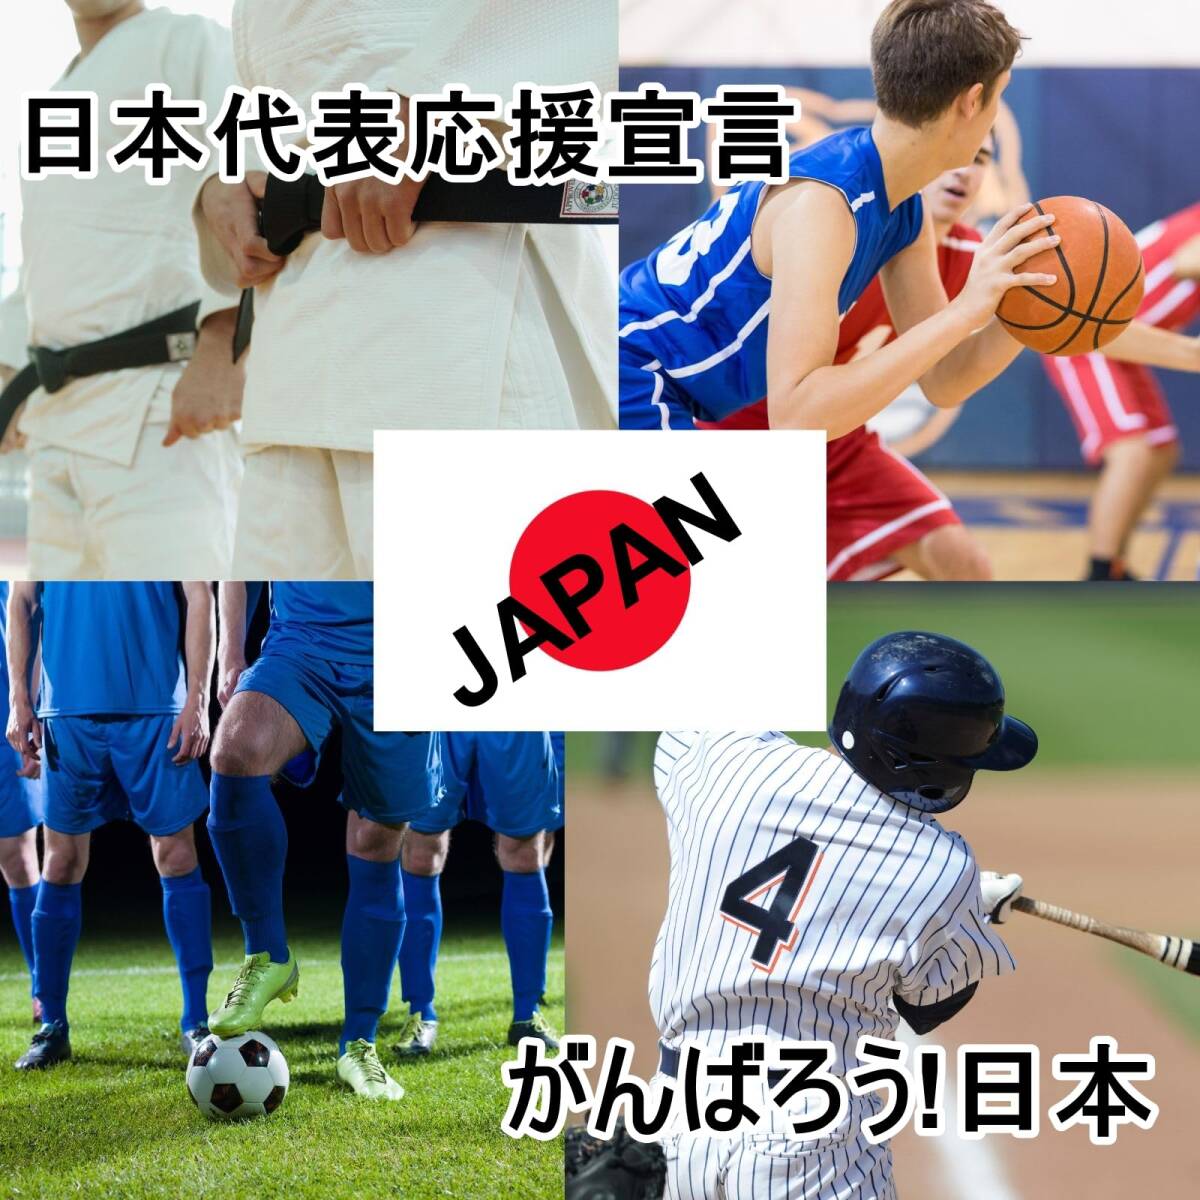 【在庫処分】日の丸 日本国旗 ワッペン ワッペン WappenCook ワッペン屋 日本製 4サイズ サッカー スポーツ 空手 柔